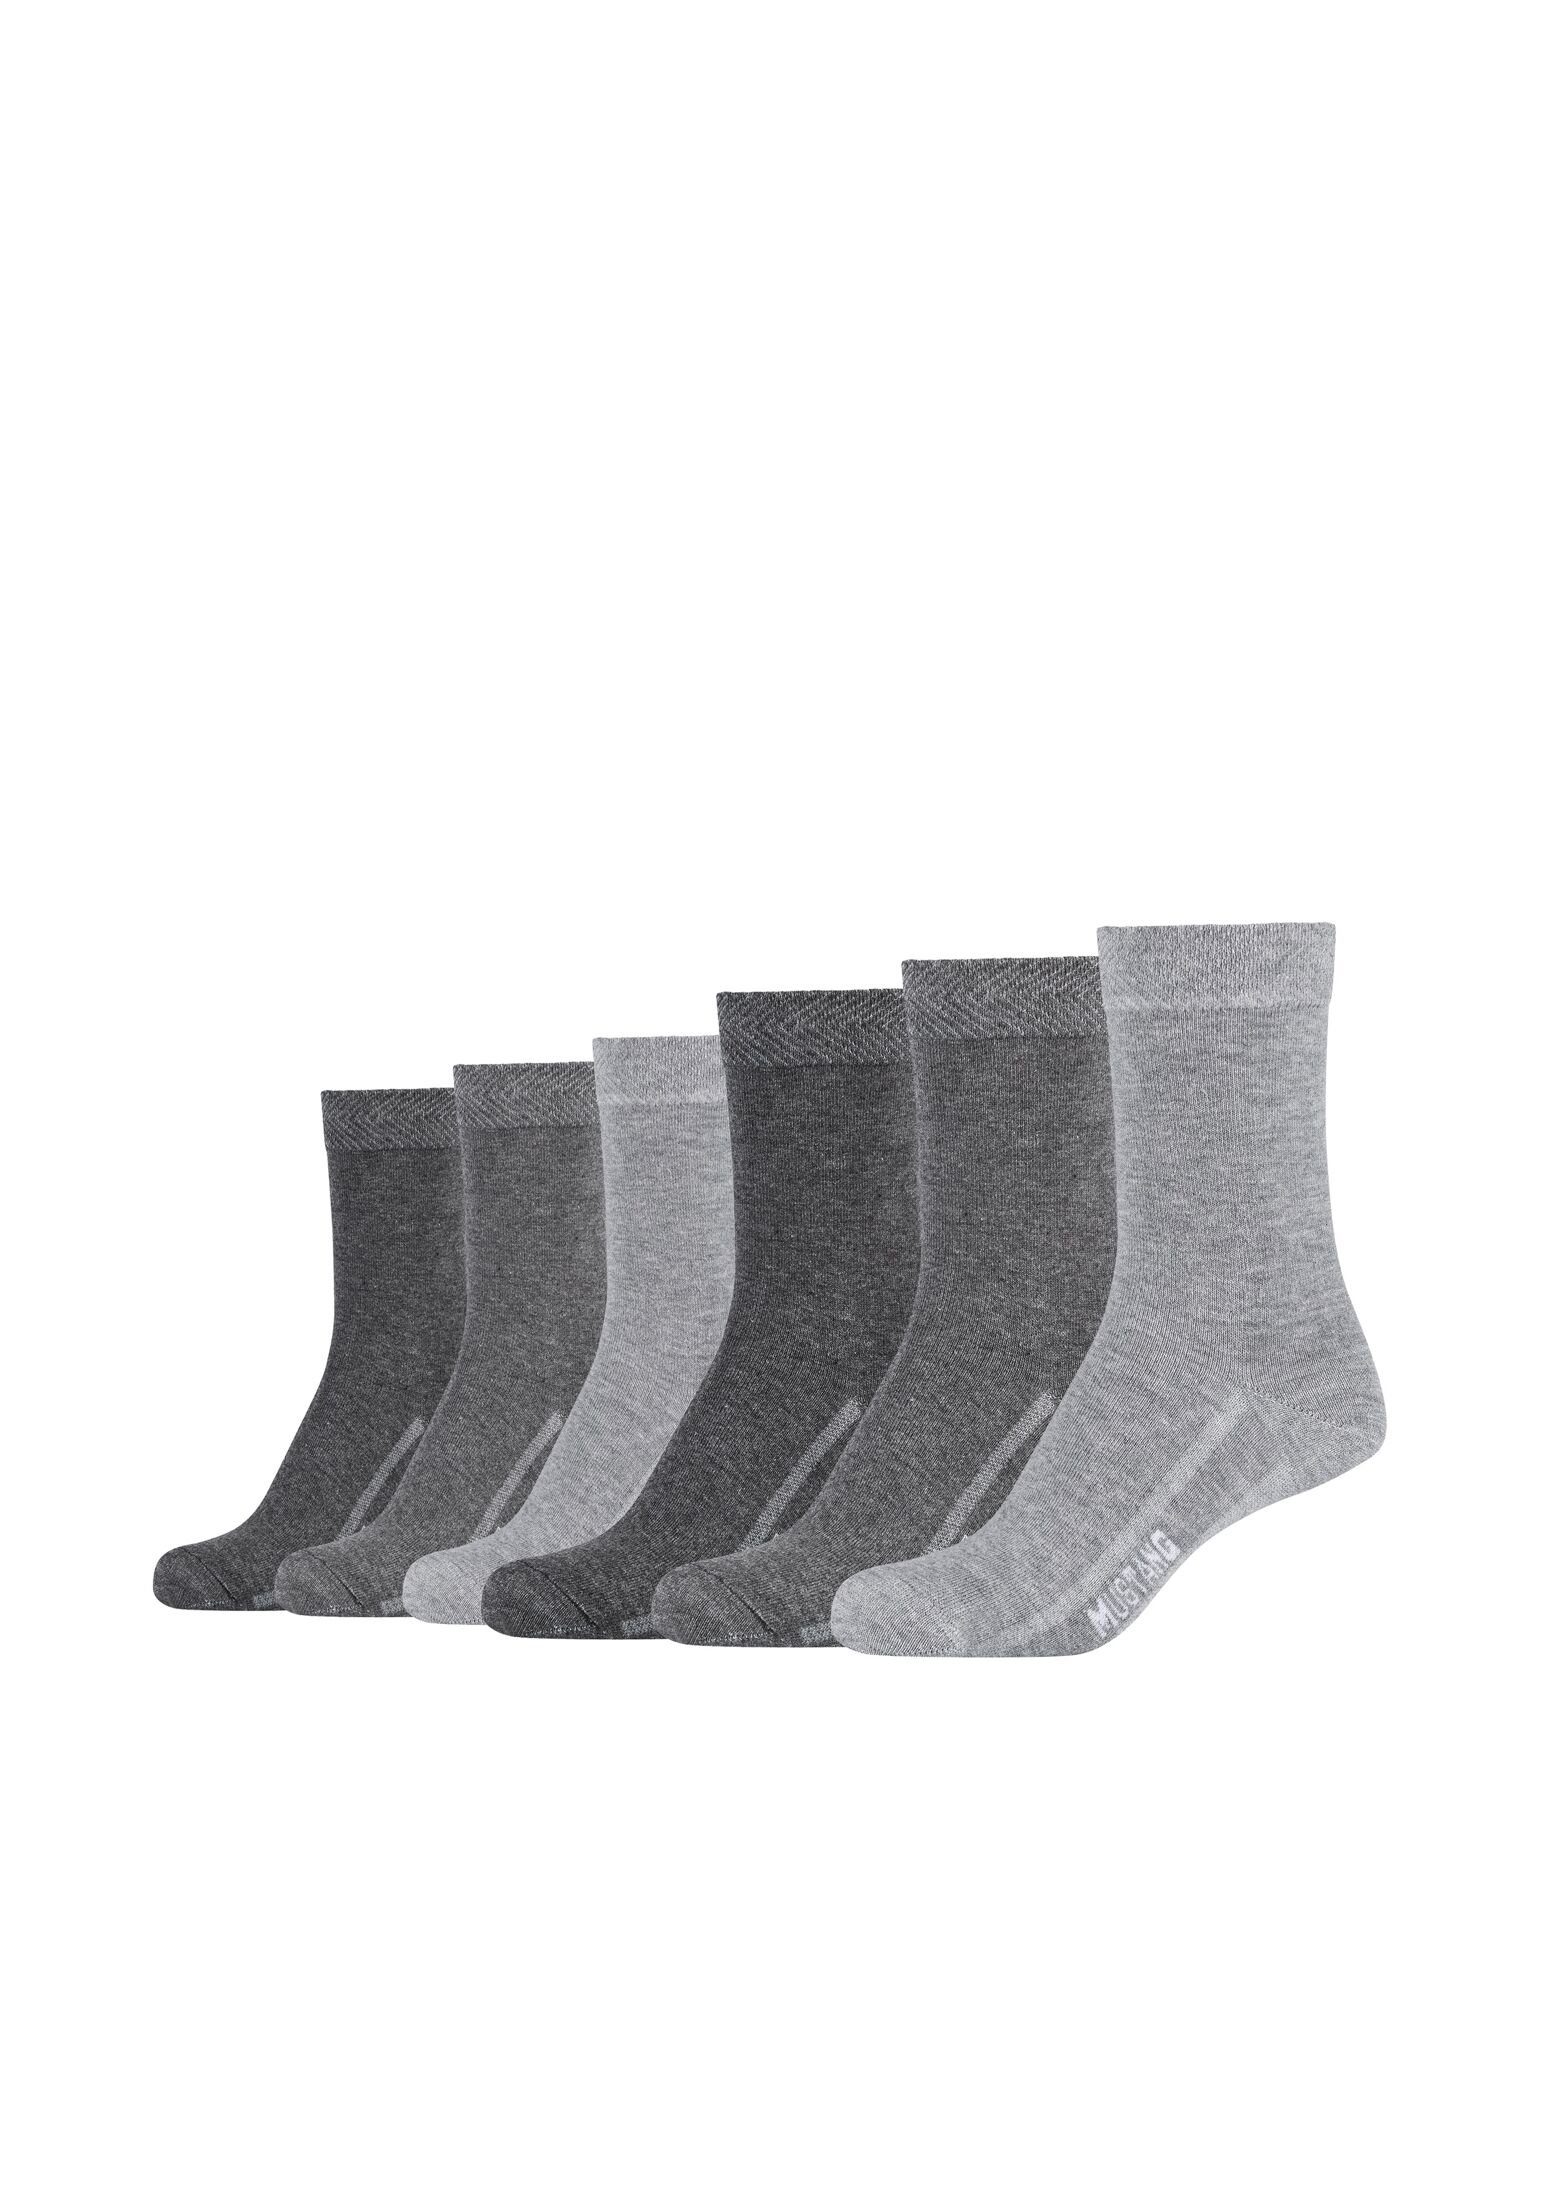 MUSTANG Socken Socken 6er Pack fog mix | 